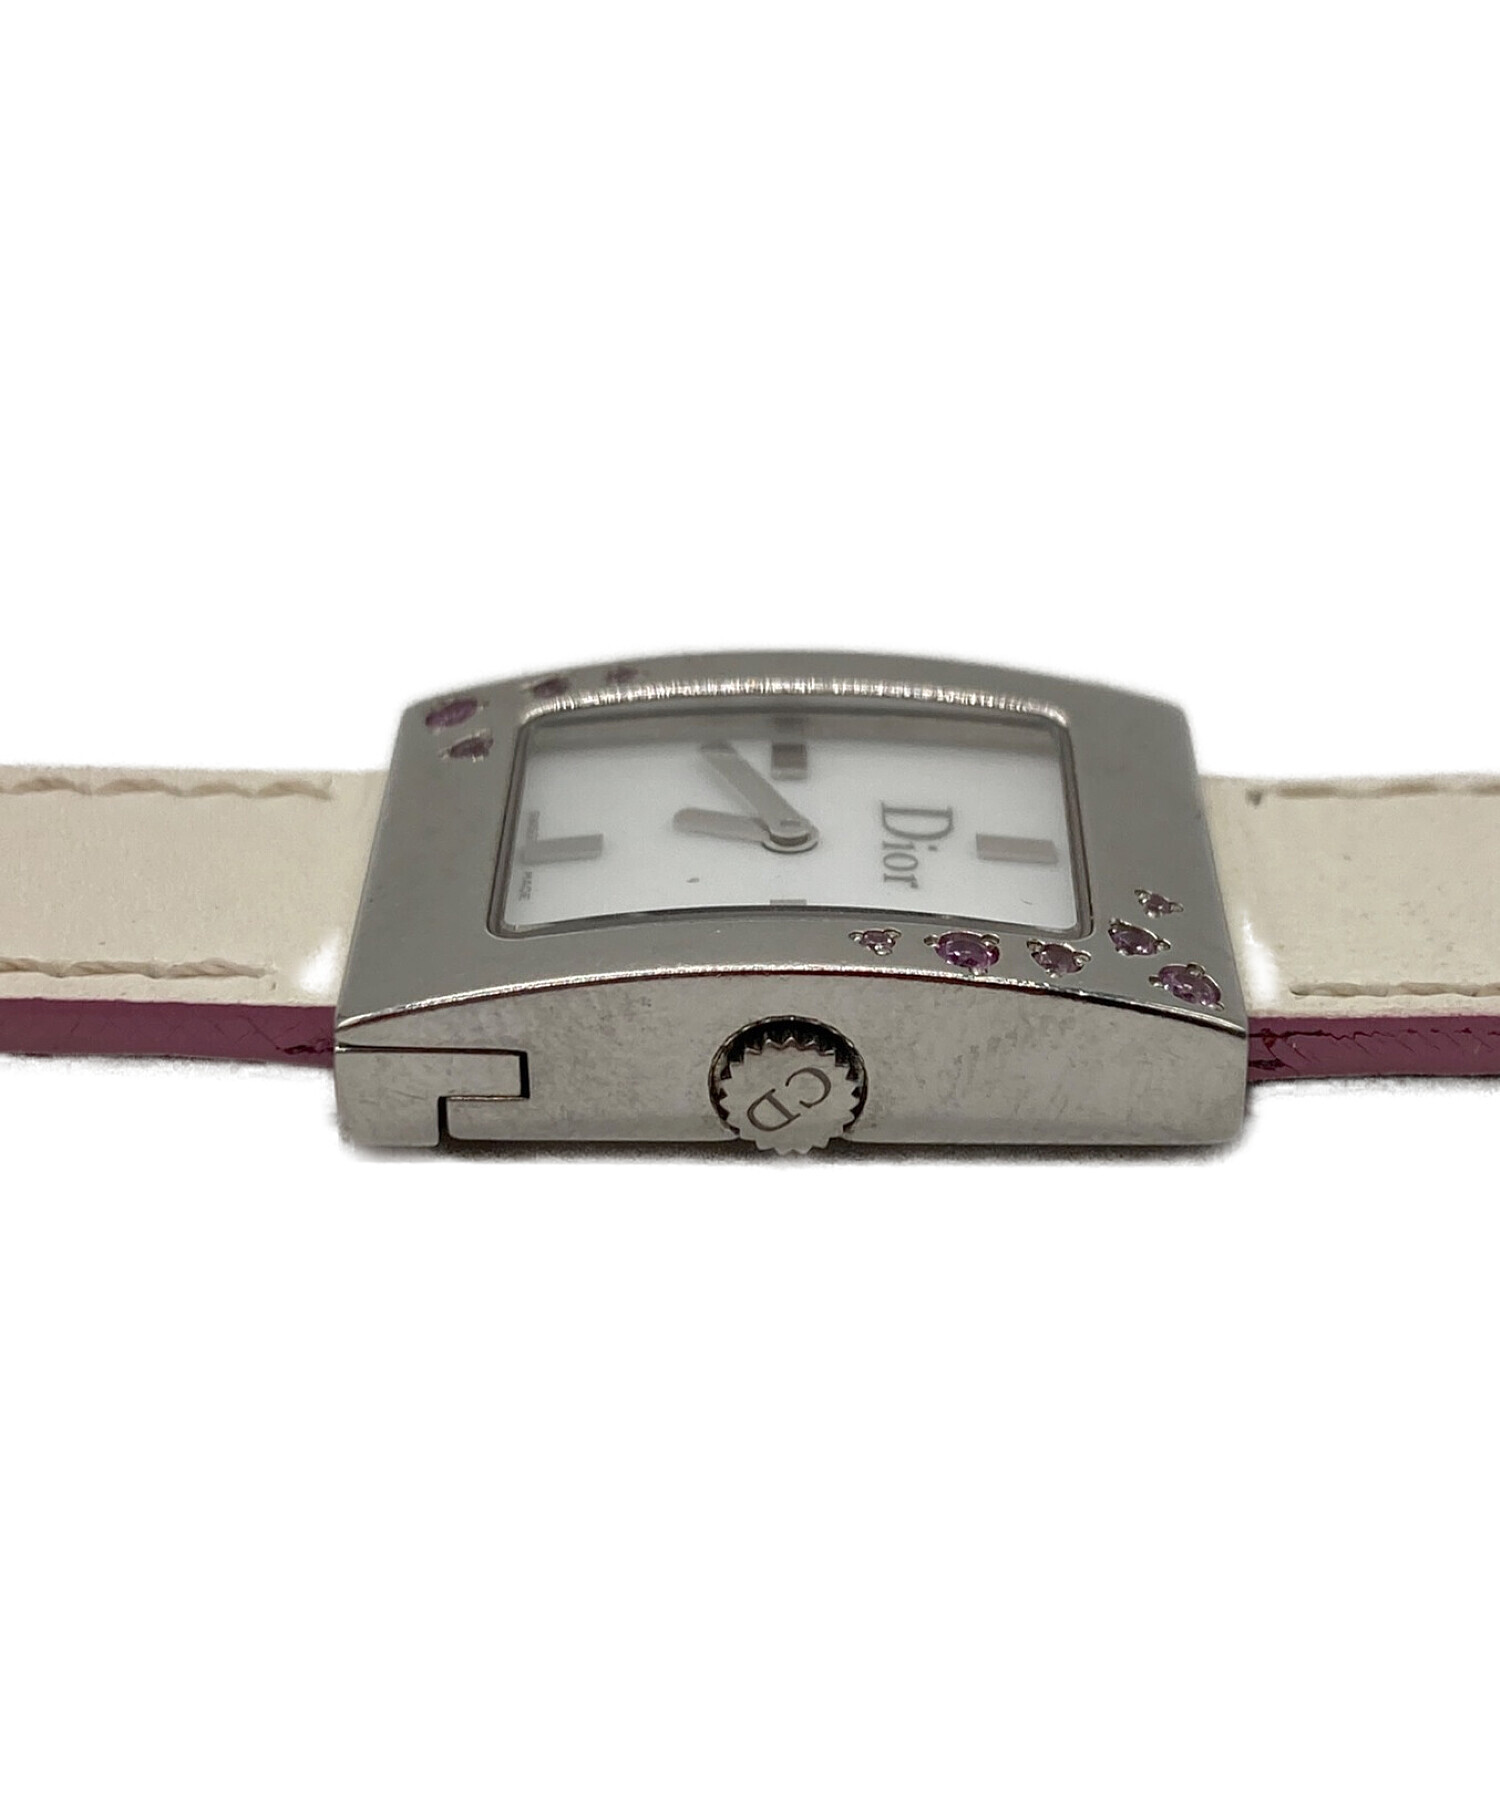 中古・古着通販】Christian Dior (クリスチャン ディオール) 腕時計